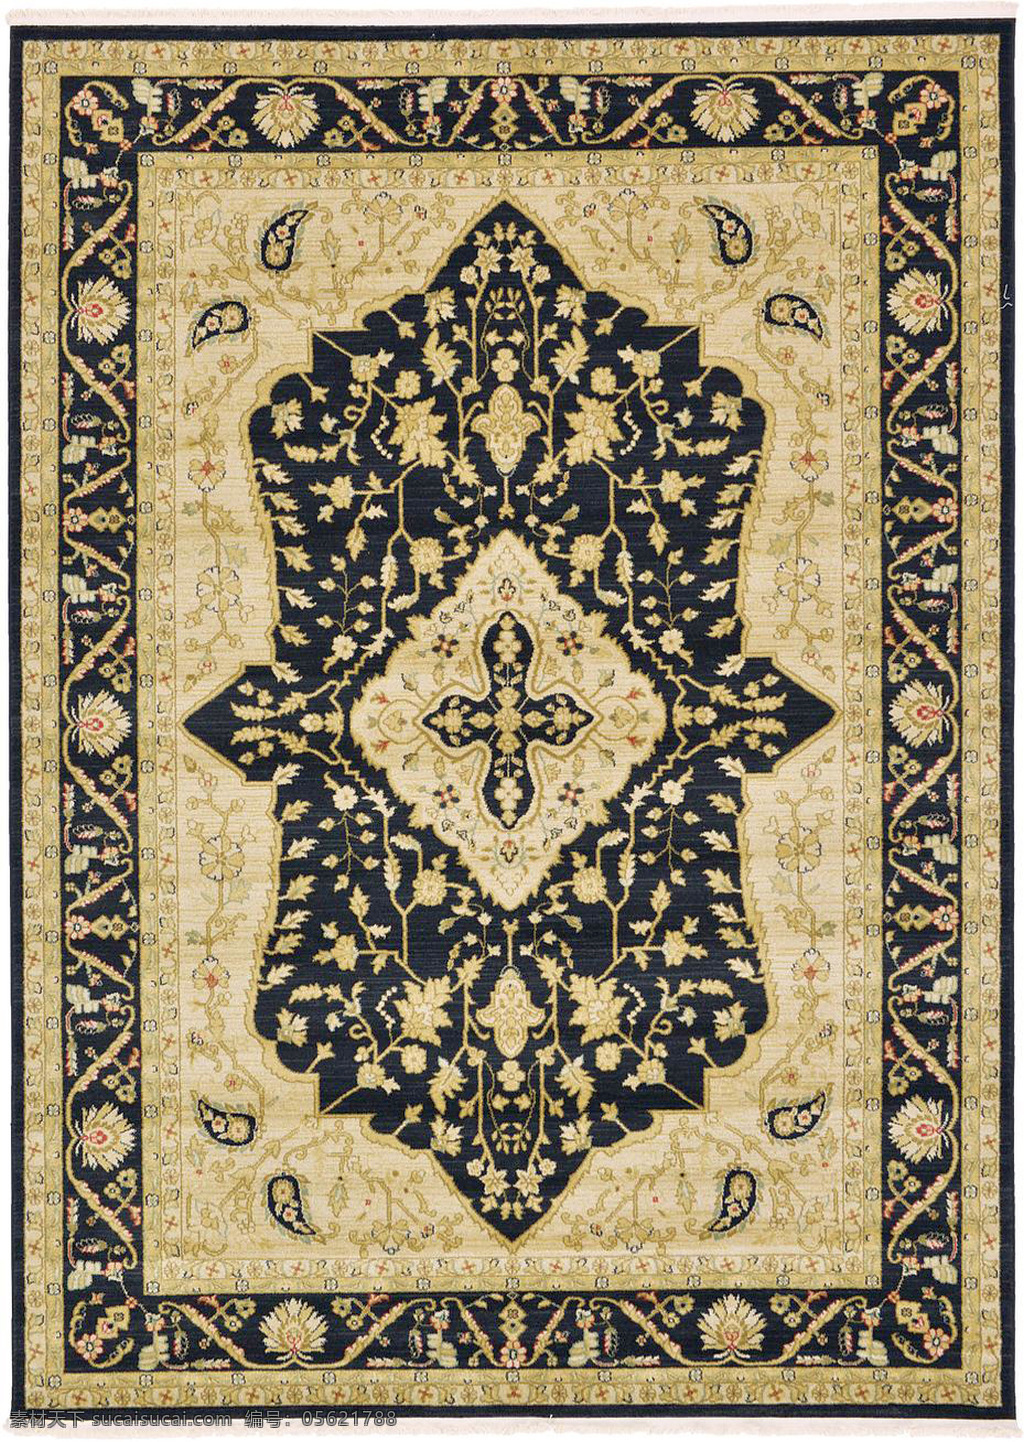 古典 经典 地毯 图案 花边 花纹 底纹 边框 方形 矩形 布料 布匹 欧洲风情